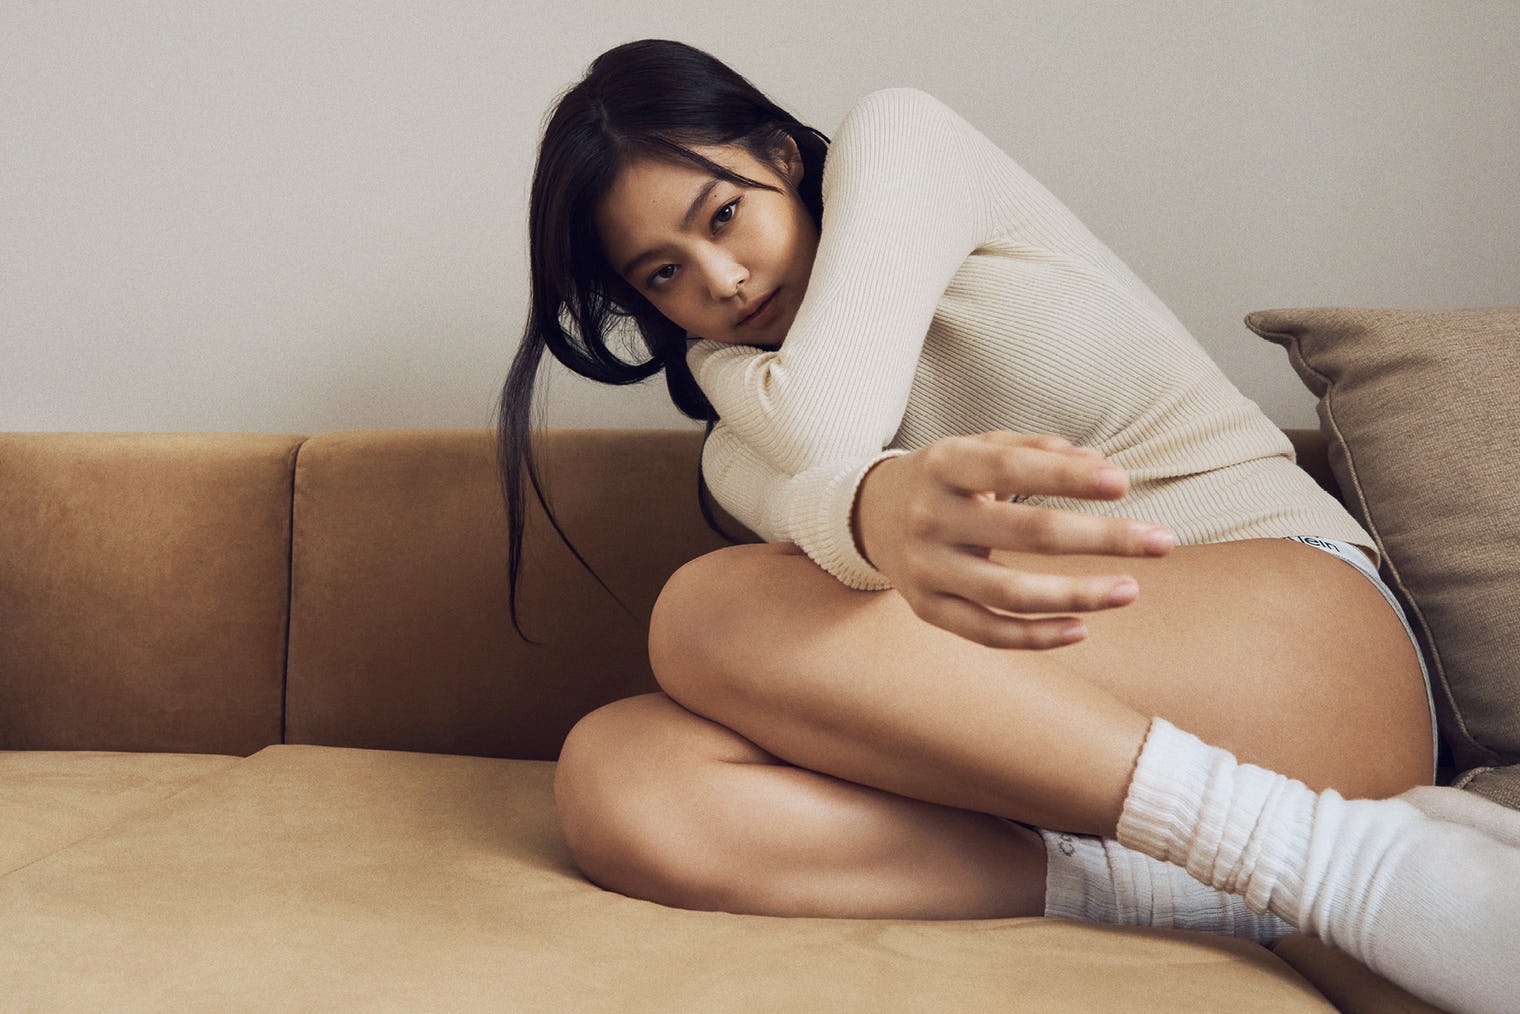 Vóc dáng sexy cùng nhan sắc xinh đẹp, cá tính của 'công chúa YG' khiến netizen 'đổ rầm rầm'. Ai nấy đều cảm thấy vô cùng 'mãn nhãn' với màn hợp tác lần này của Jennie và Calvin Klein.